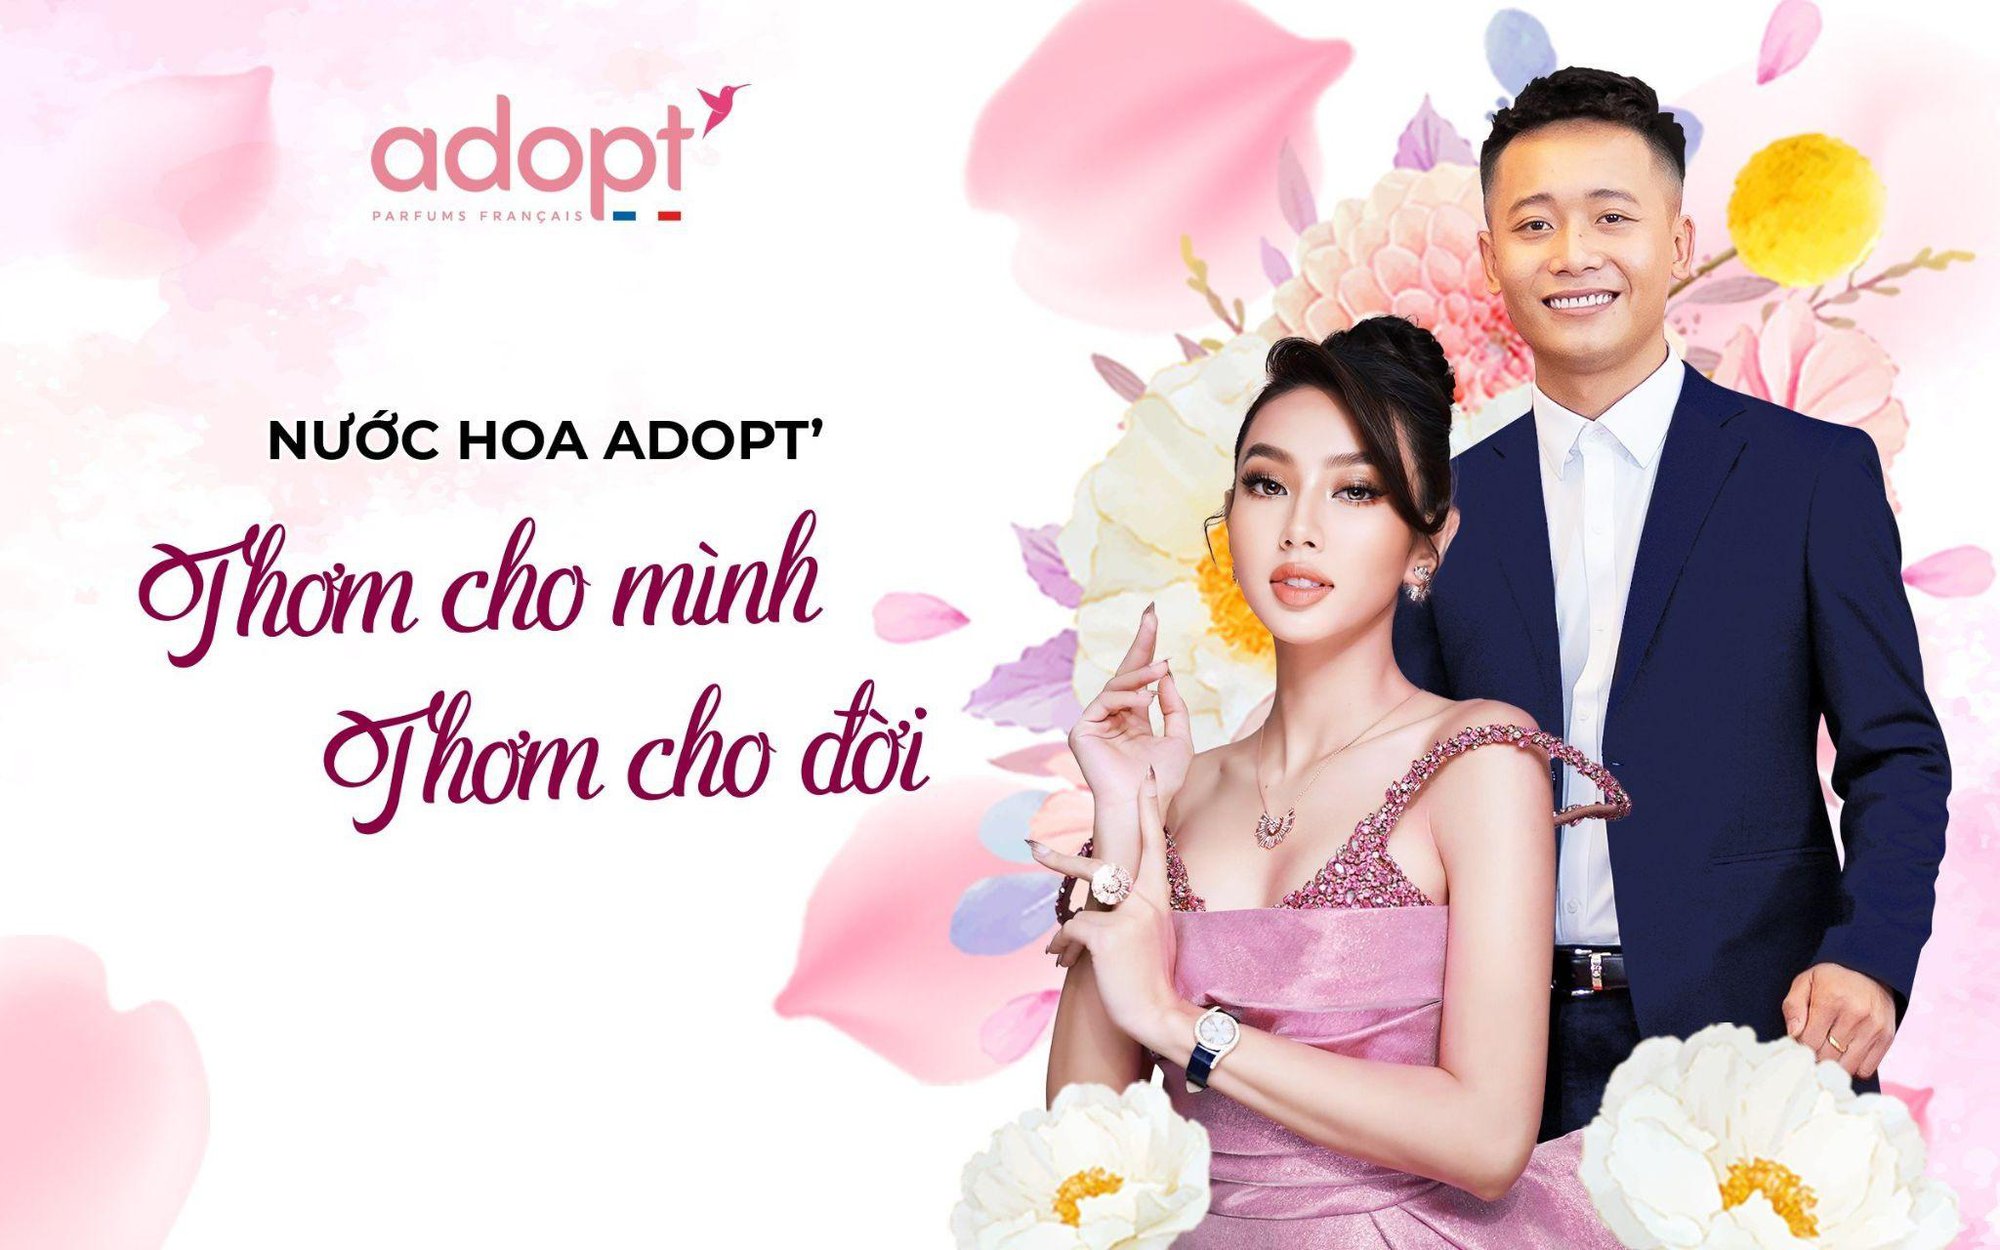 Adopt - Nước hoa hàng hiệu giá bình dân, nâng tầm trải nghiệm người dùng Việt - Ảnh 1.